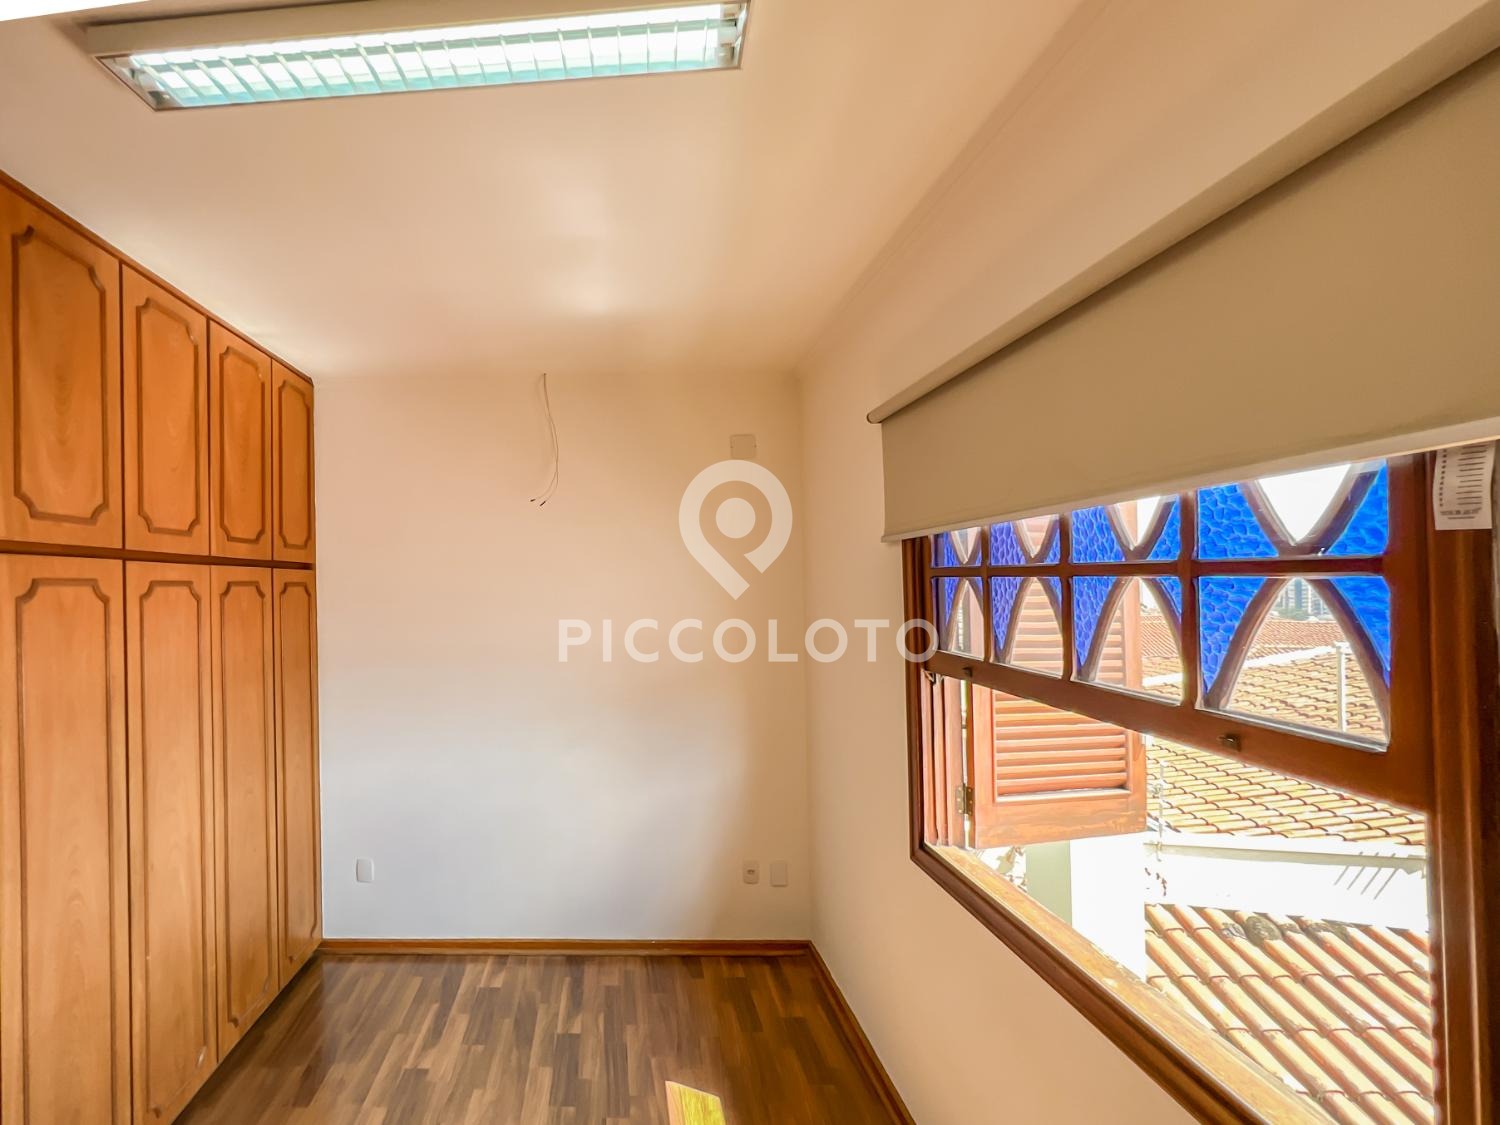 Piccoloto -Casa para alugar no Jardim Guarani em Campinas